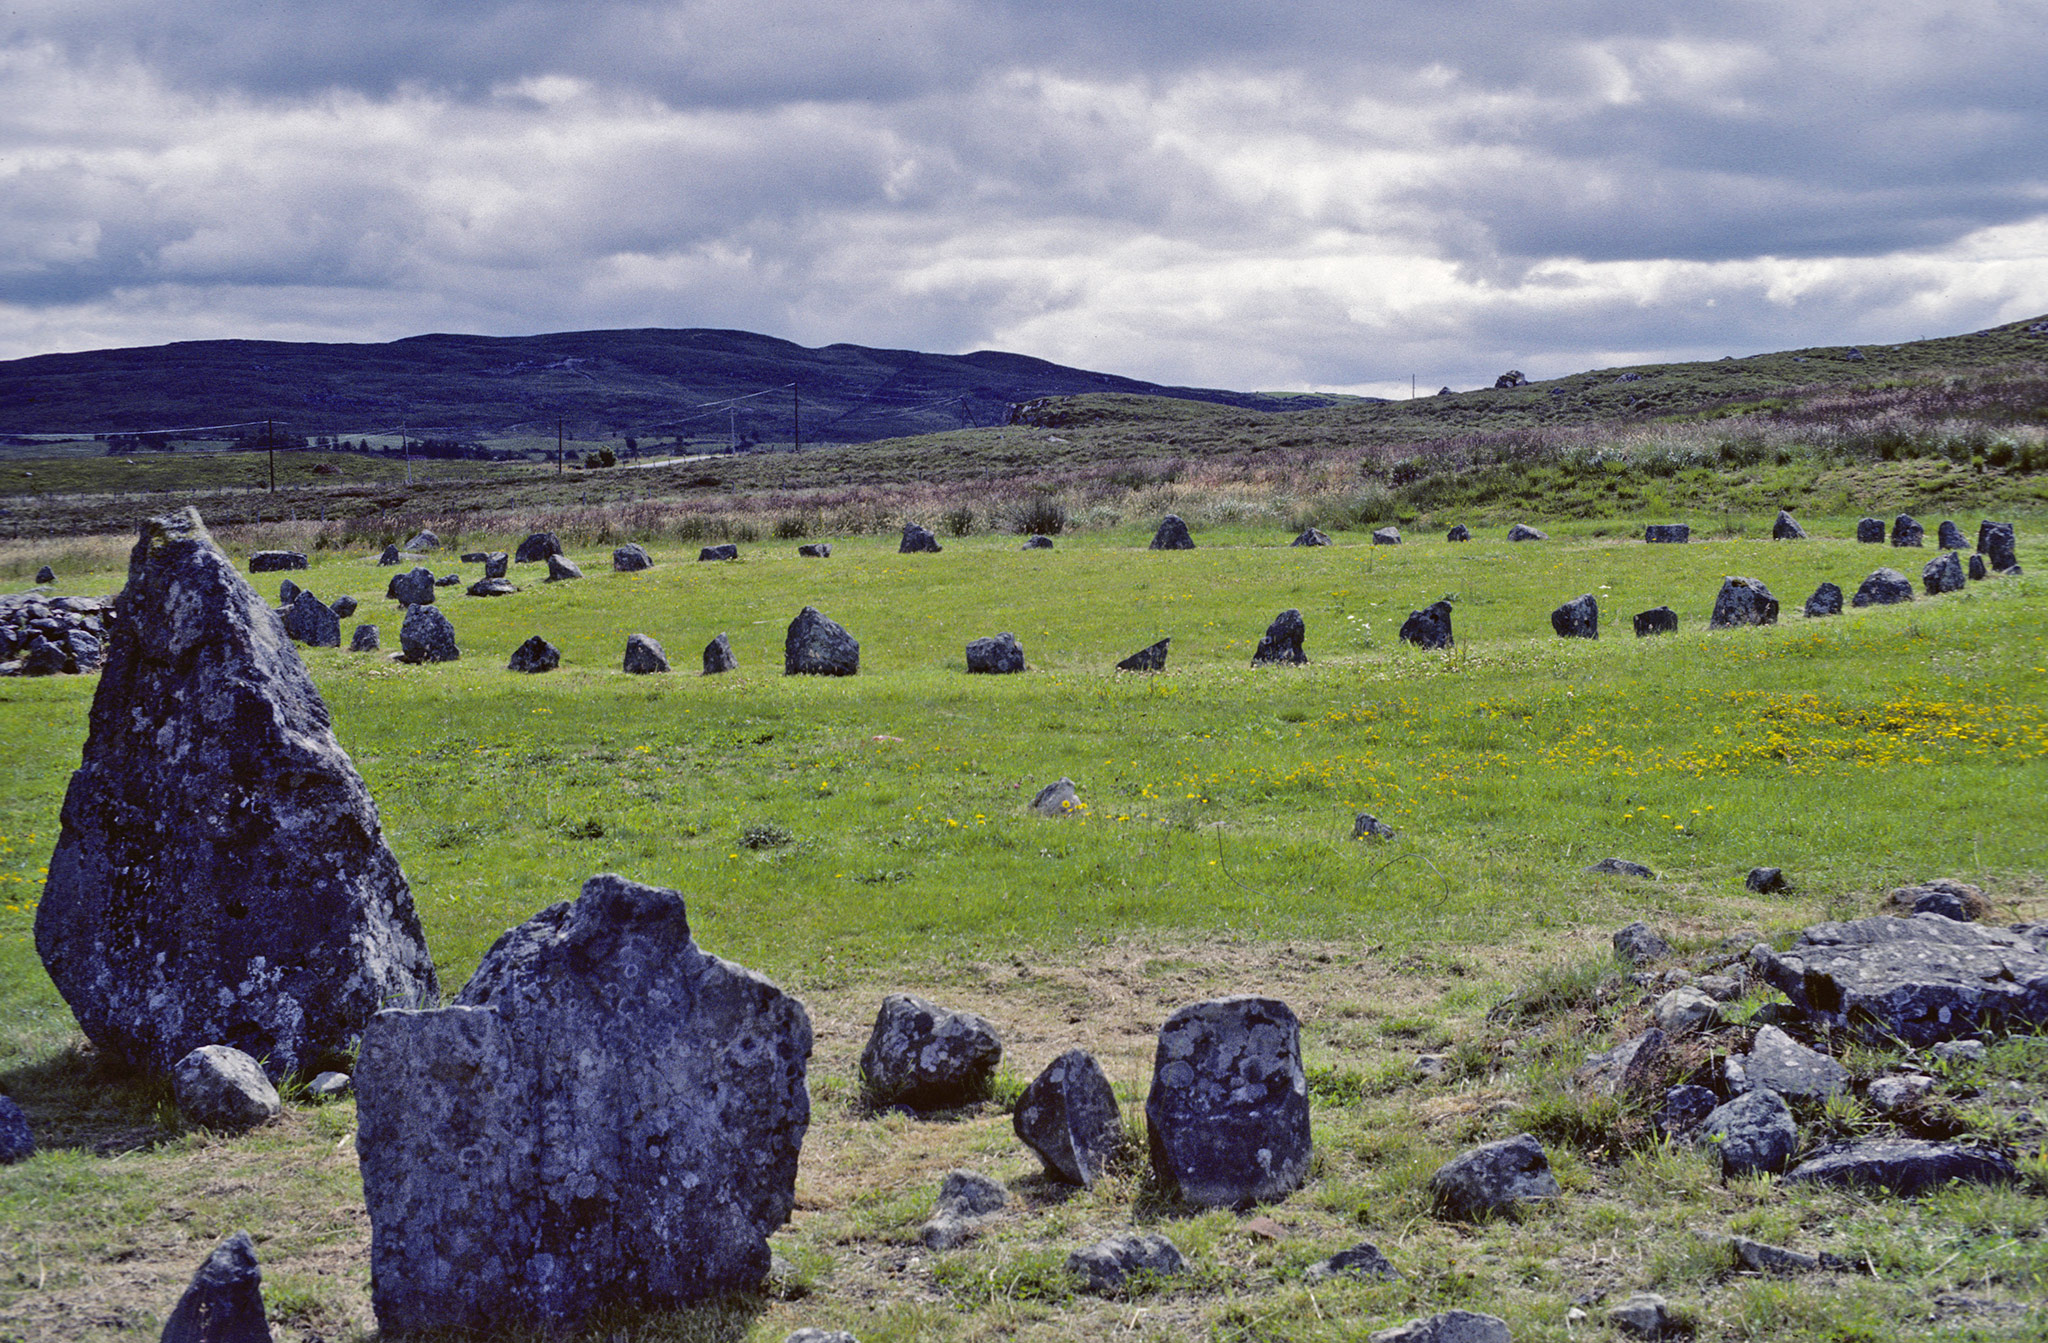 A seulement quelques kilomètres d'Omagh, le site de Beaghmore pour voir les sept cercles de pierres, une douzaine de cairns et des rangées de pierres, le tout perdu dans la lande. Le site semble daté de l'âge de bronze (2000-1200 avant JC). Comté de Tyrone - Irlande 1984